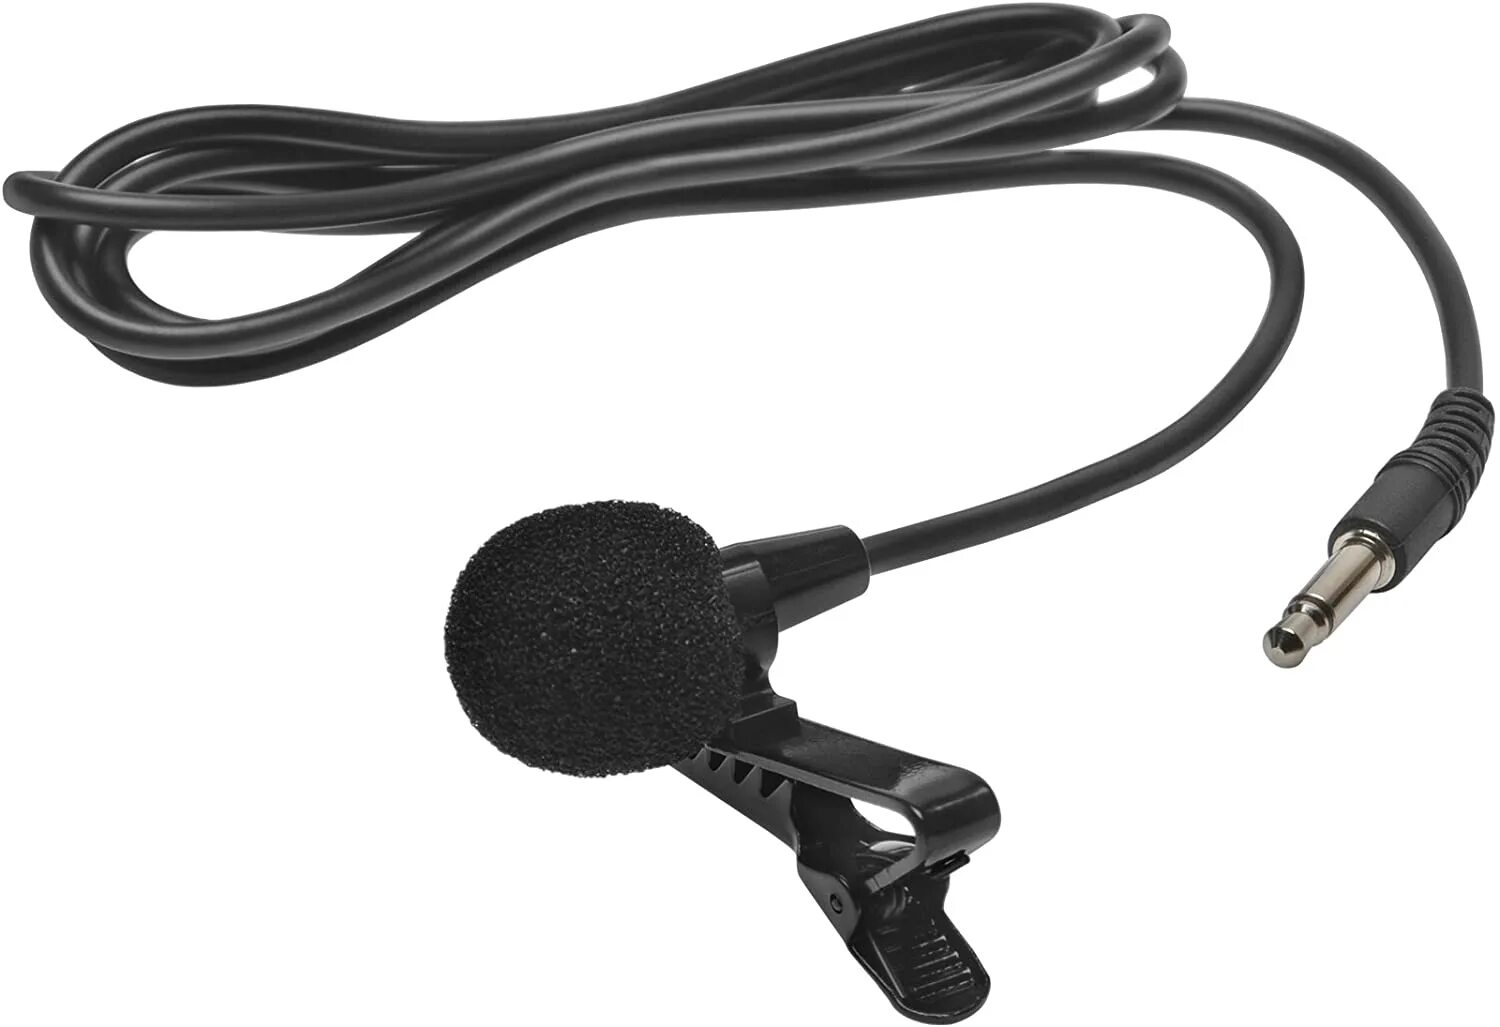 Купить микрофон для автомагнитолы. Drift Ghost x (доп. Микрофон USB). Сони 410 БТ выносной микрофон. Видеокамера с выносным микрофоном. Выносной микрофон для автомагнитолы.